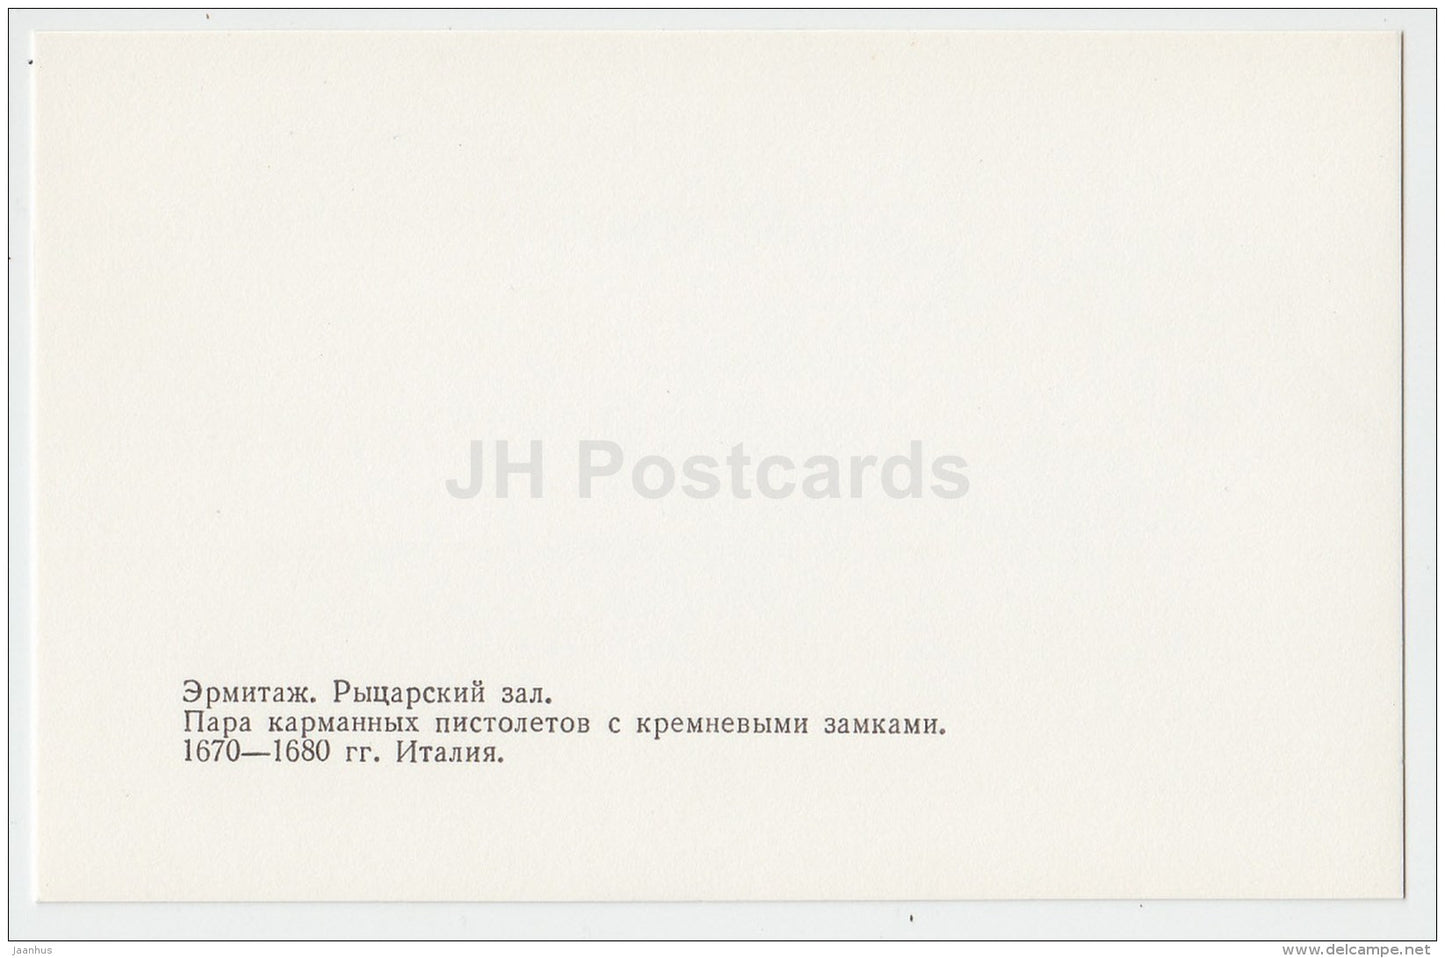 A pair of pocket pistols with flint locks - Hermitage - Knights' Hall - St. Petersburg - 1986 - Russia USSR - unused - JH Postcards